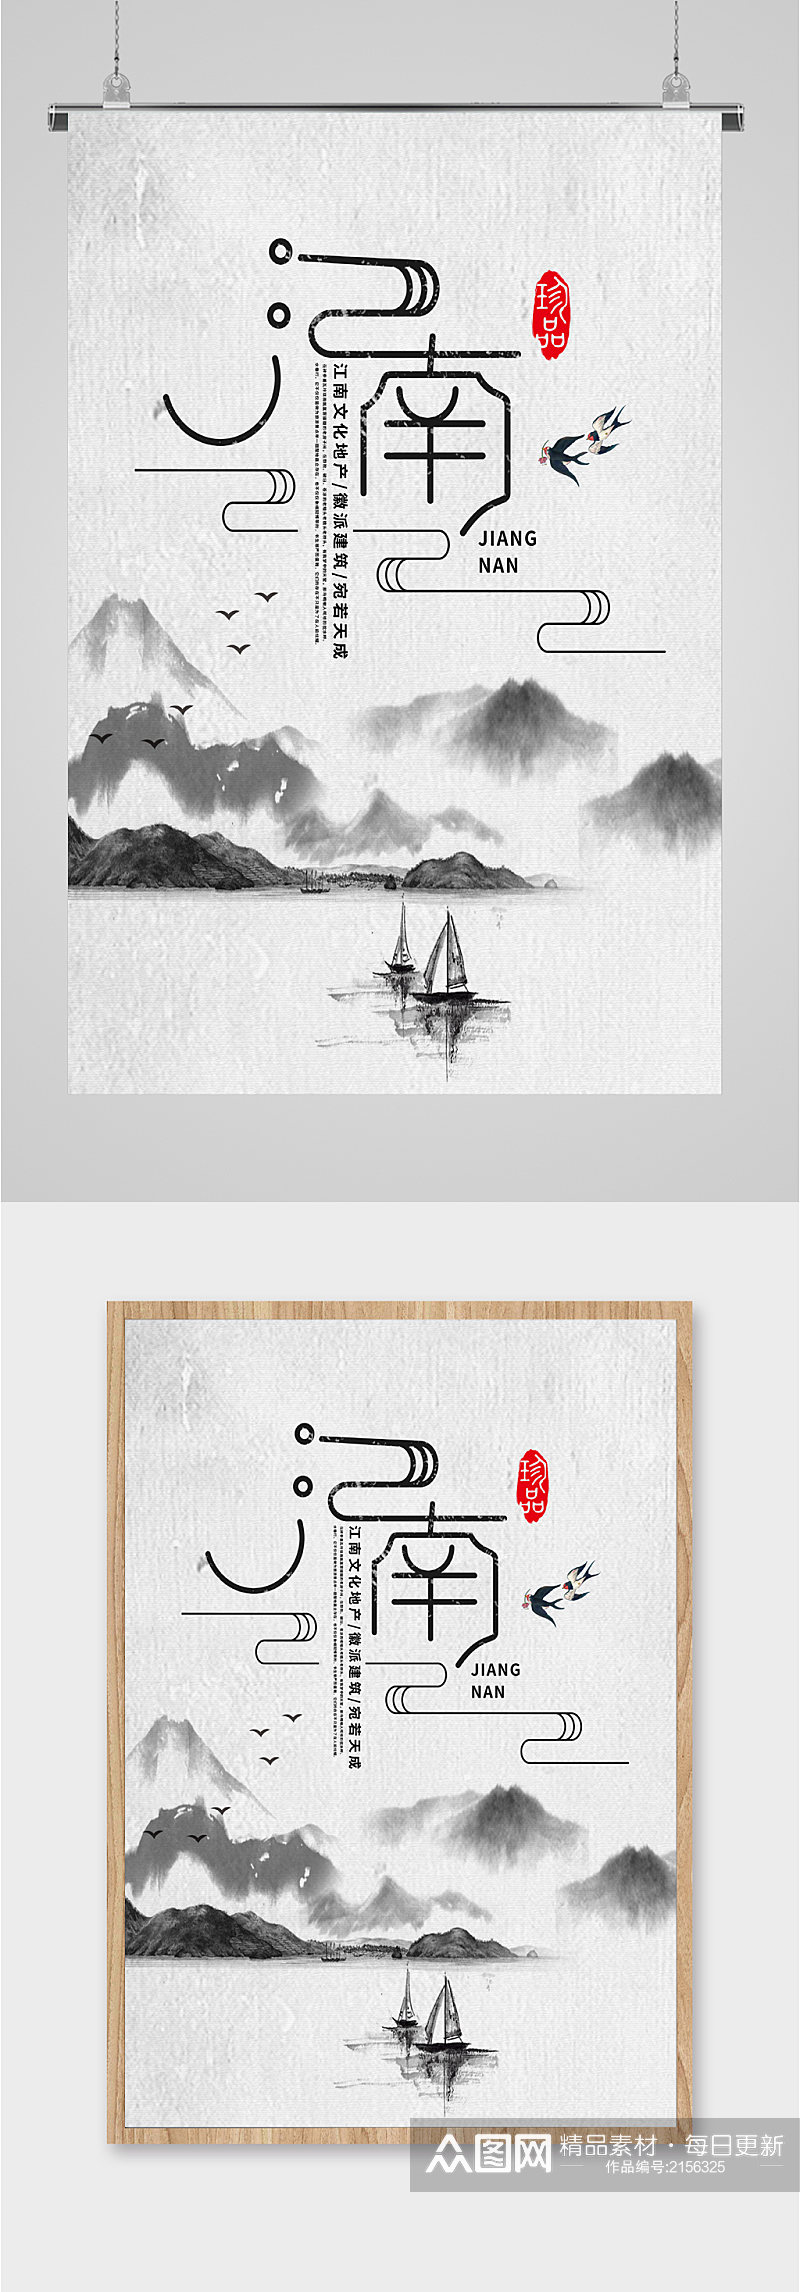 江南文化旅游海报素材